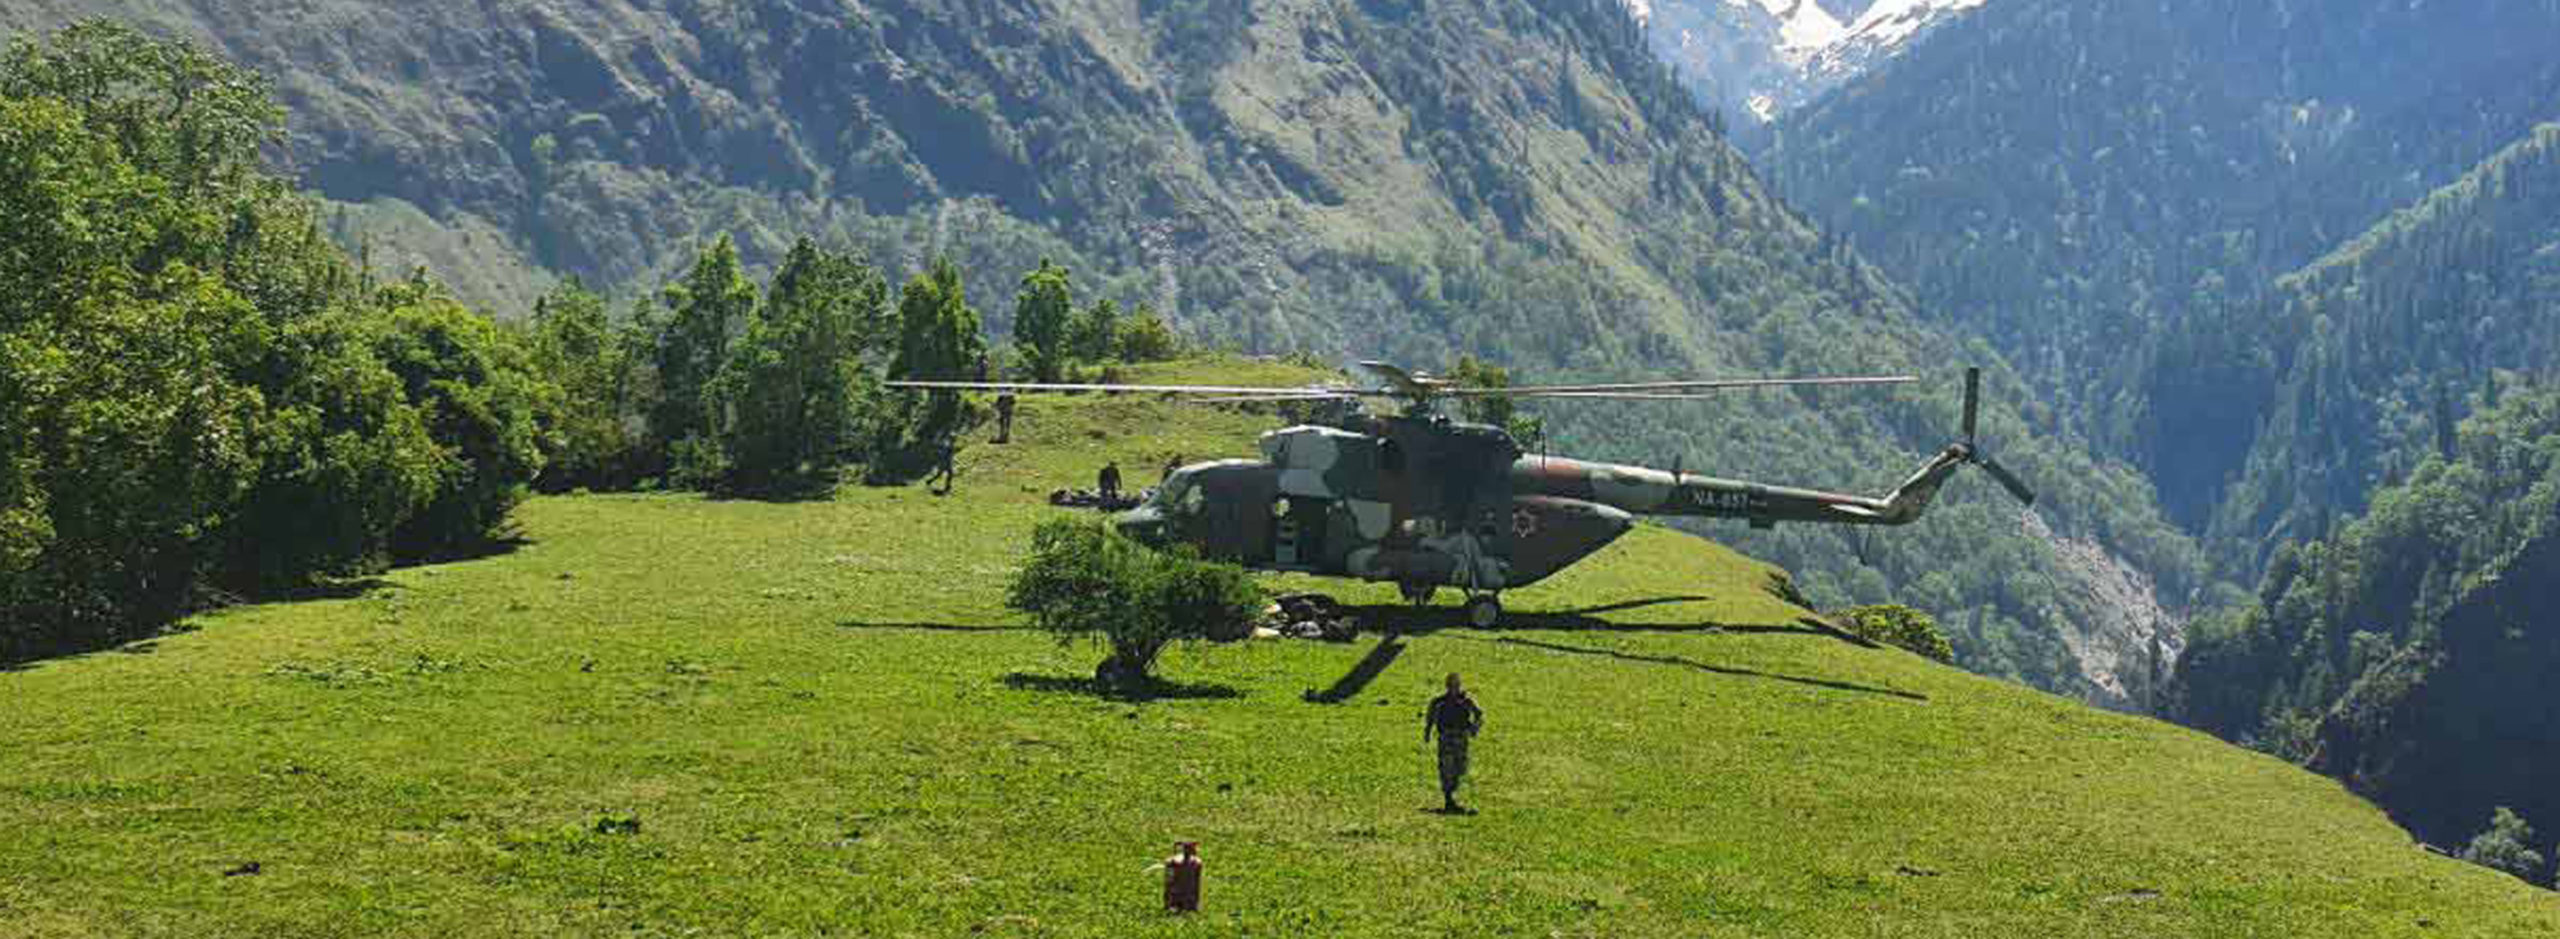 Nepal Army camp set up at Ghantibagar in Darchula